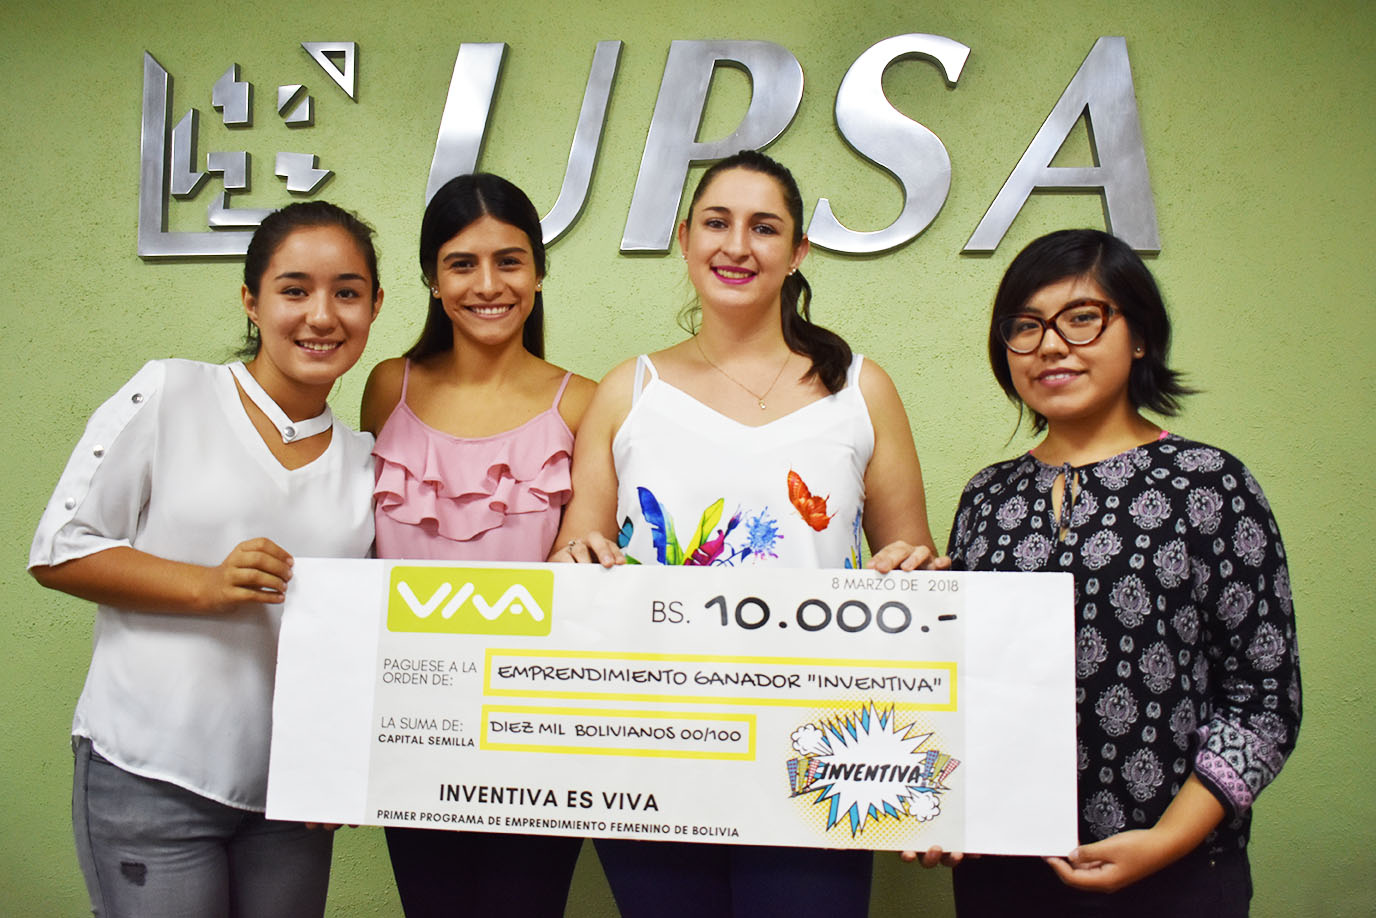 Sitio Web creado en la UPSA obtuvo primer lugar en el concurso Inventiva